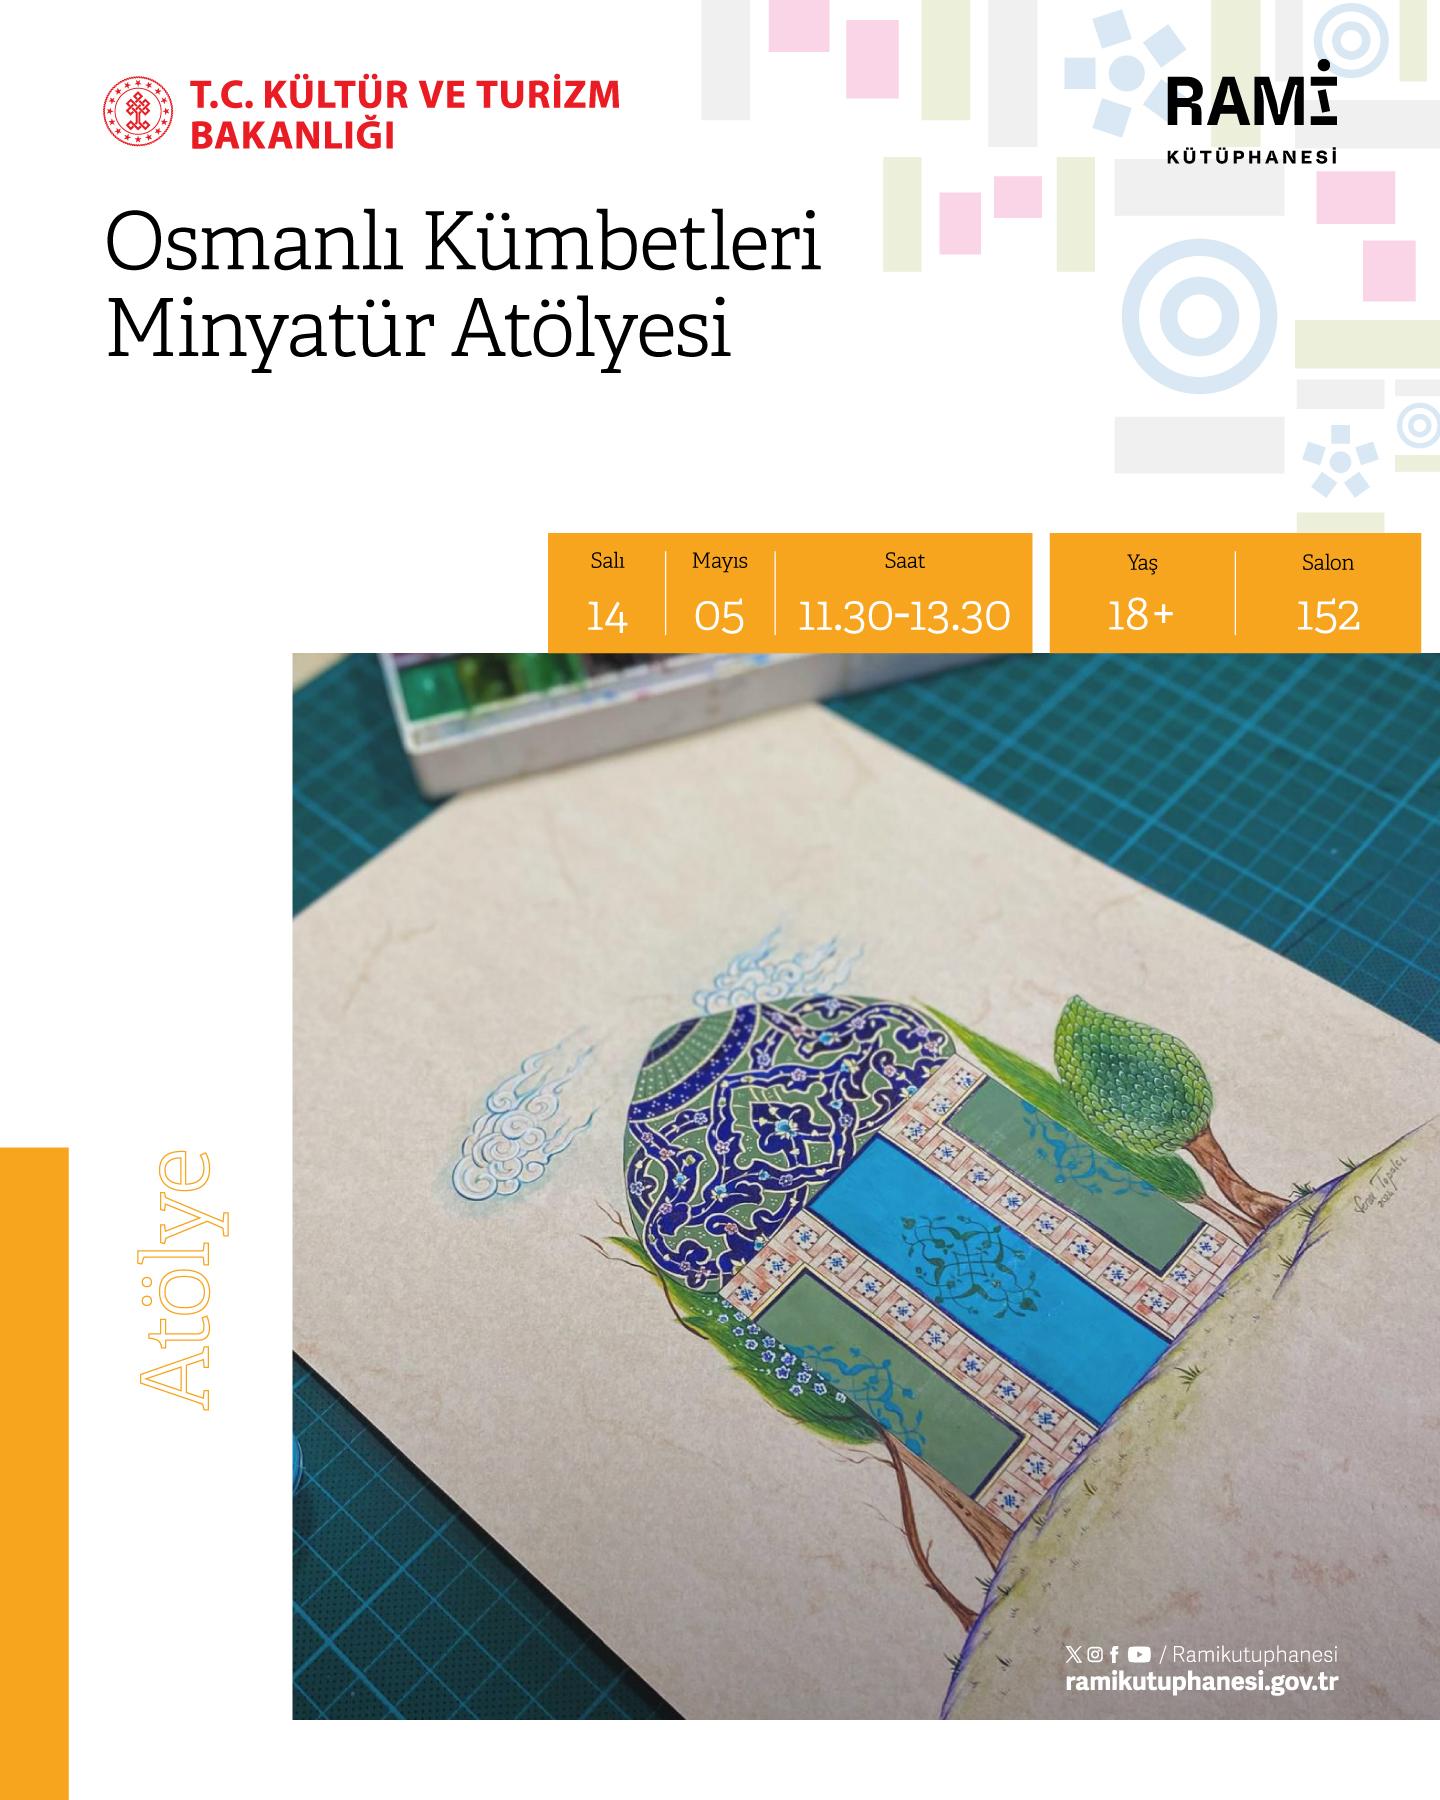 Osmanlı Kümbetleri Minyatür Atölyesi